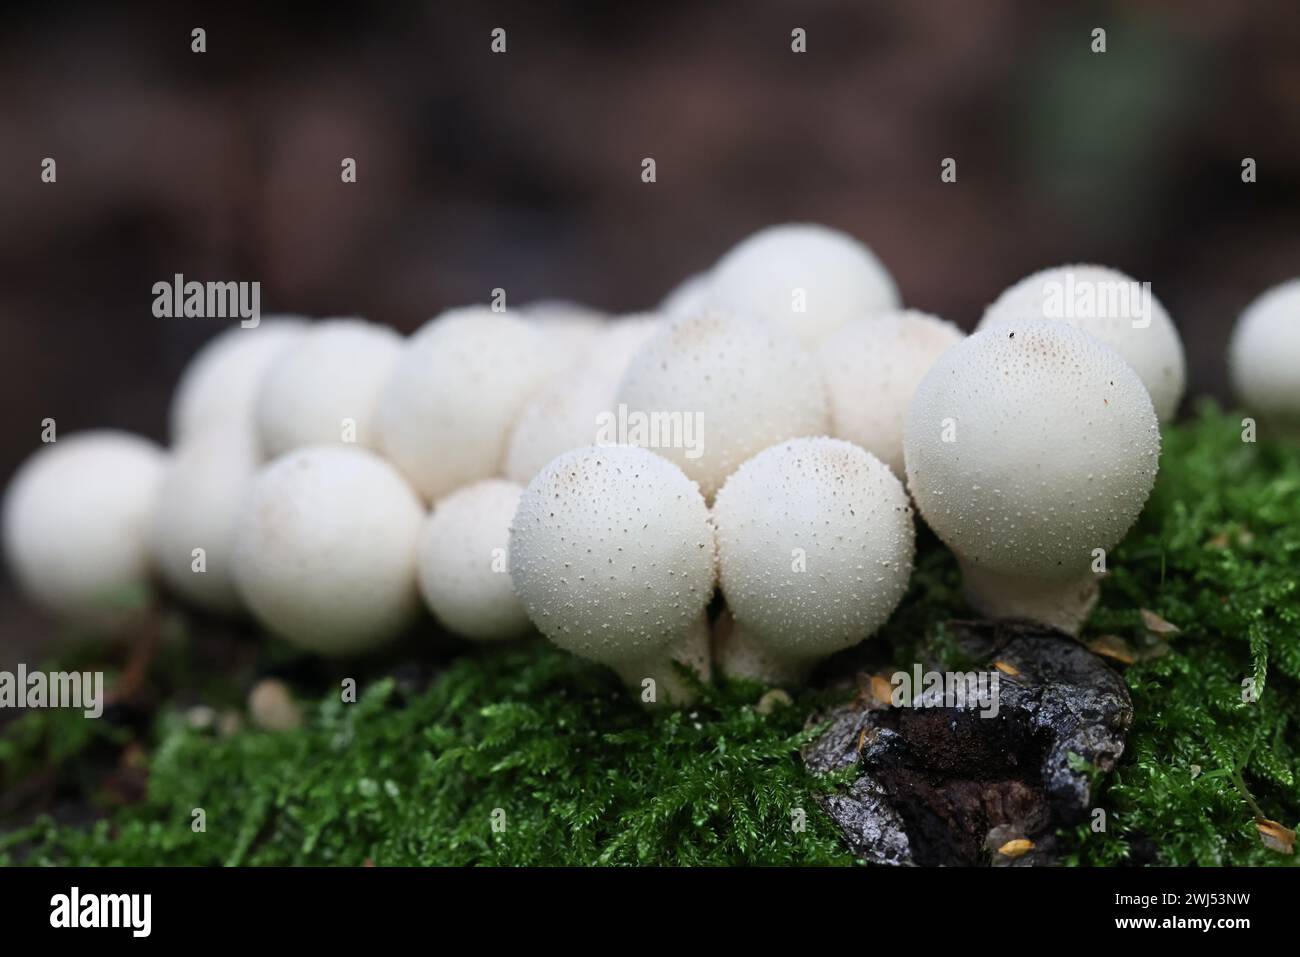 Apioperdon pyriforme, früher Lycoperdon pyriforme genannt, allgemein bekannt als der birnenförmige Puffball oder Stumpf Puffball, Pilz aus Finnland Stockfoto